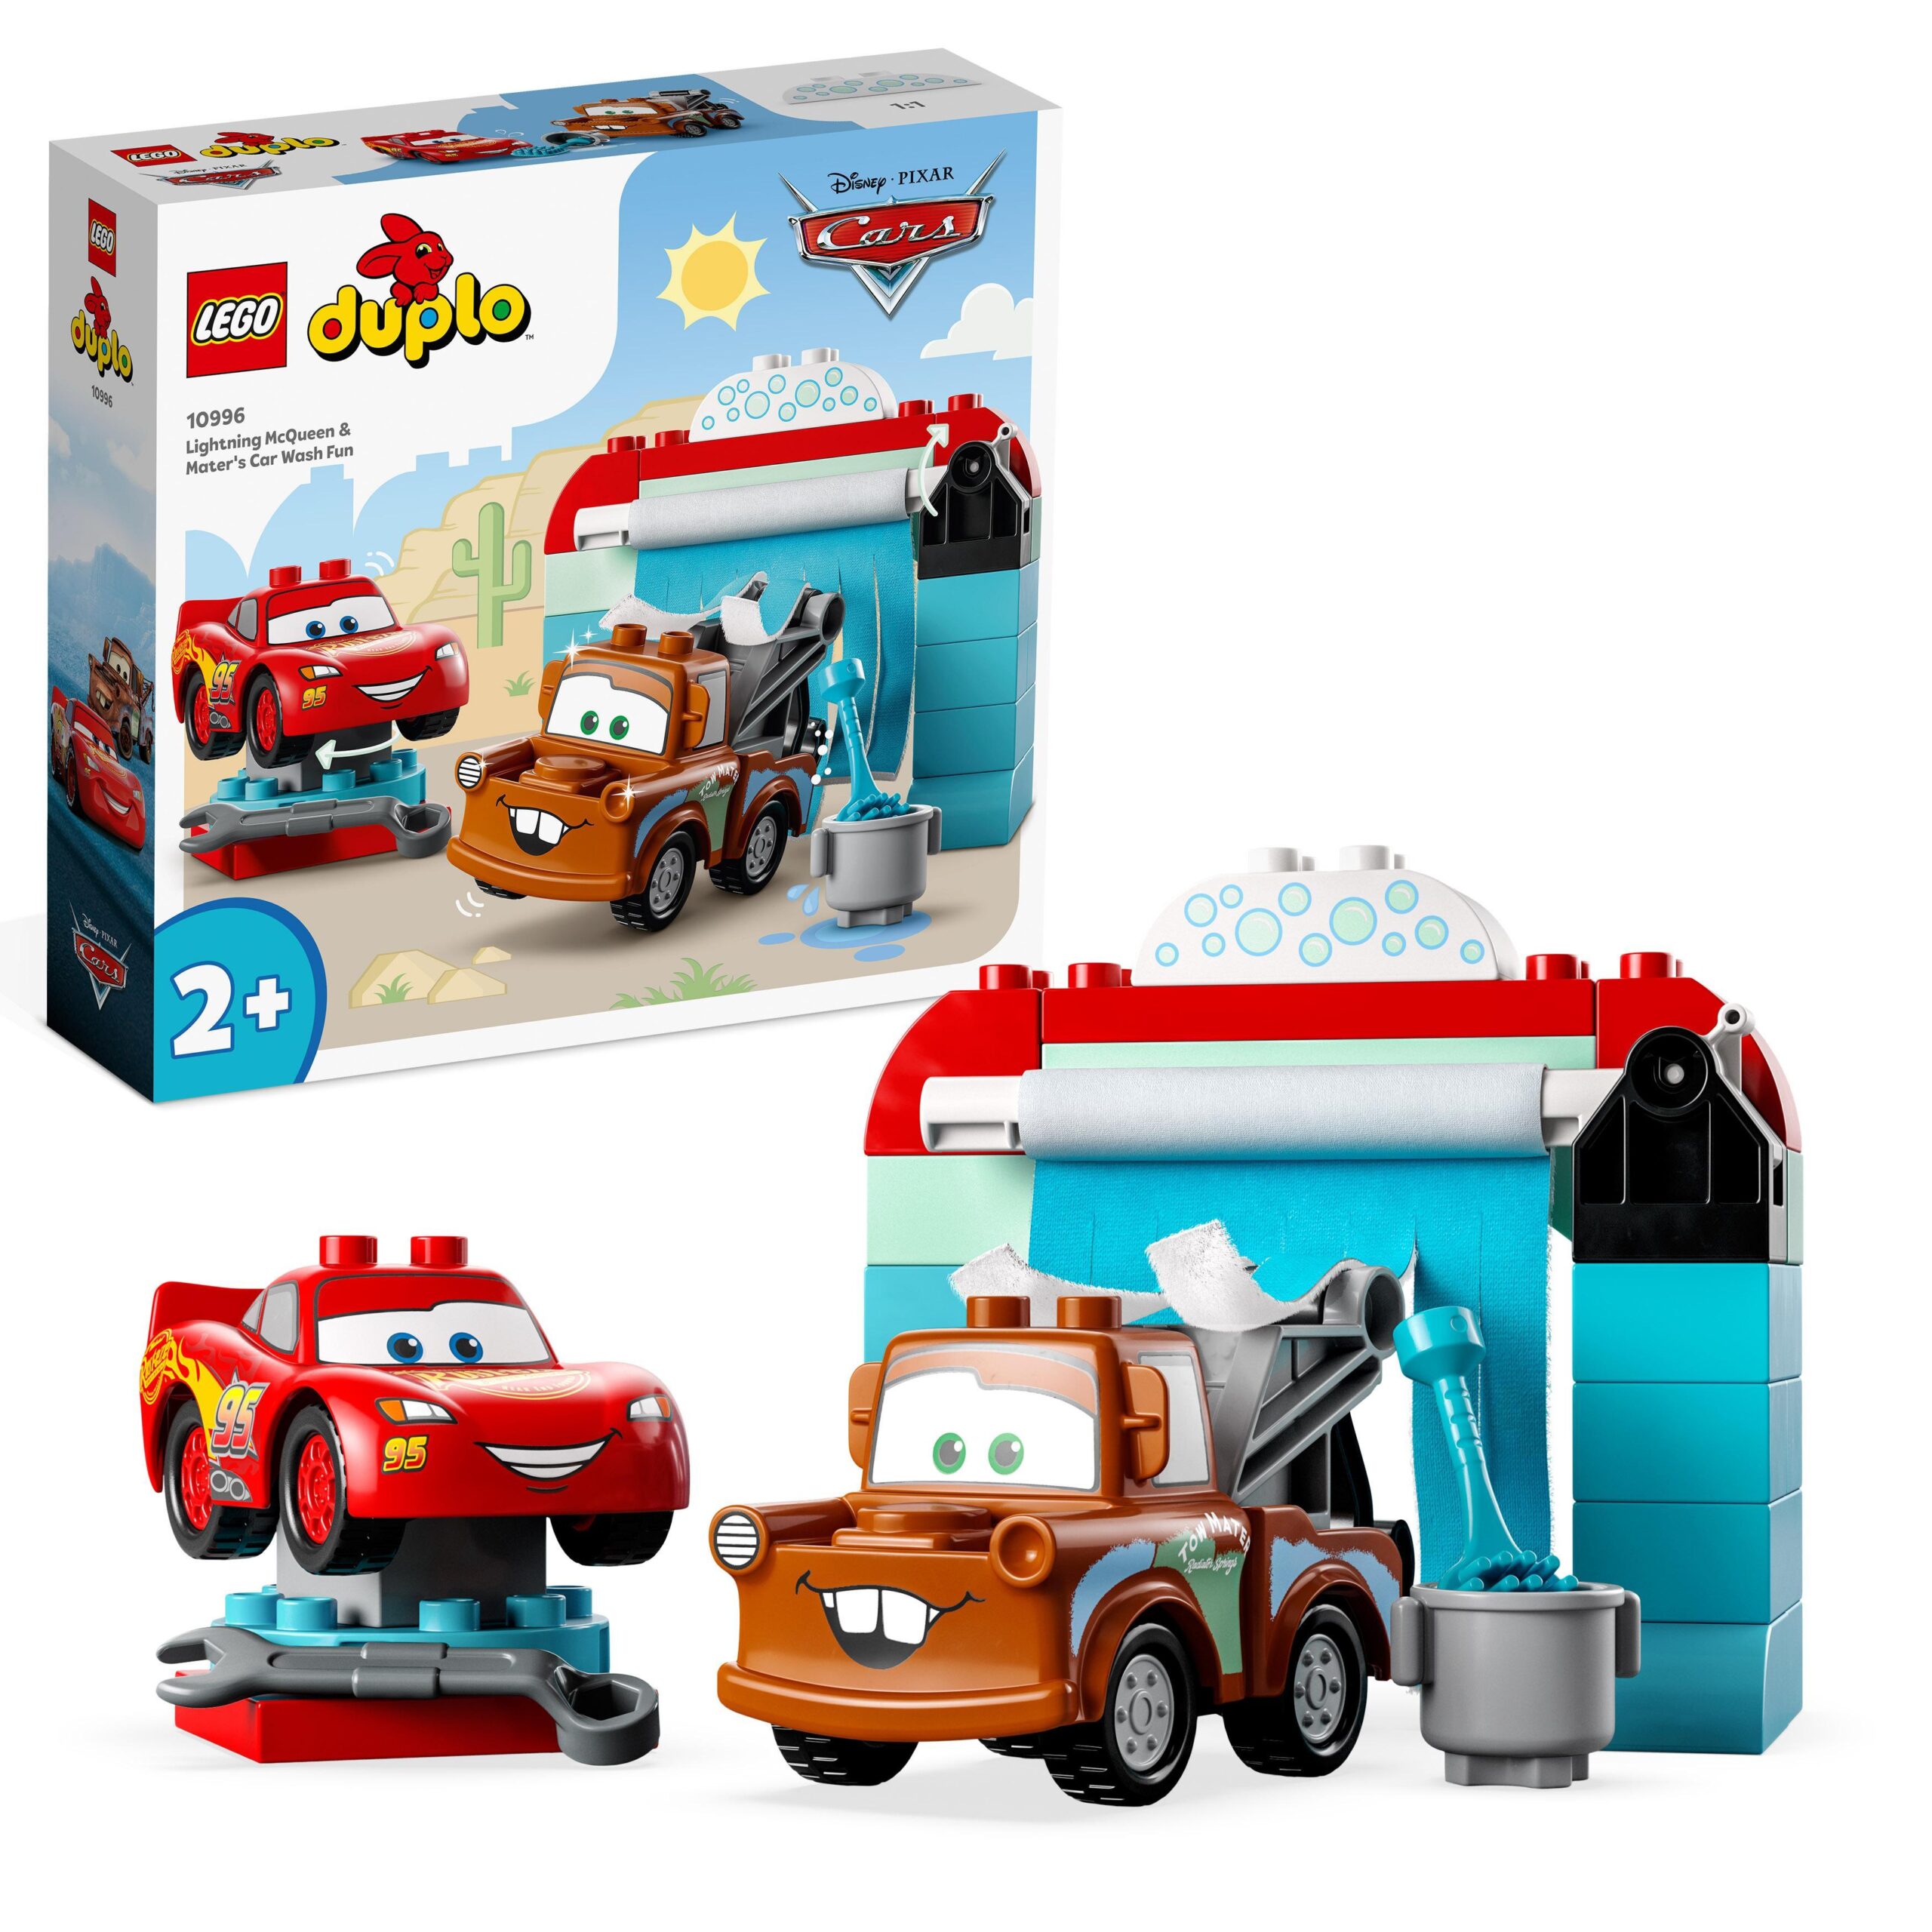 LEGO DUPLO 10567 - Set di costruzione per bambino/bambina, 18 pezzi,  multicolore, 1,5 anno/i, 18 pezzi, bambino/bambina, 3 anni, DUPLO 